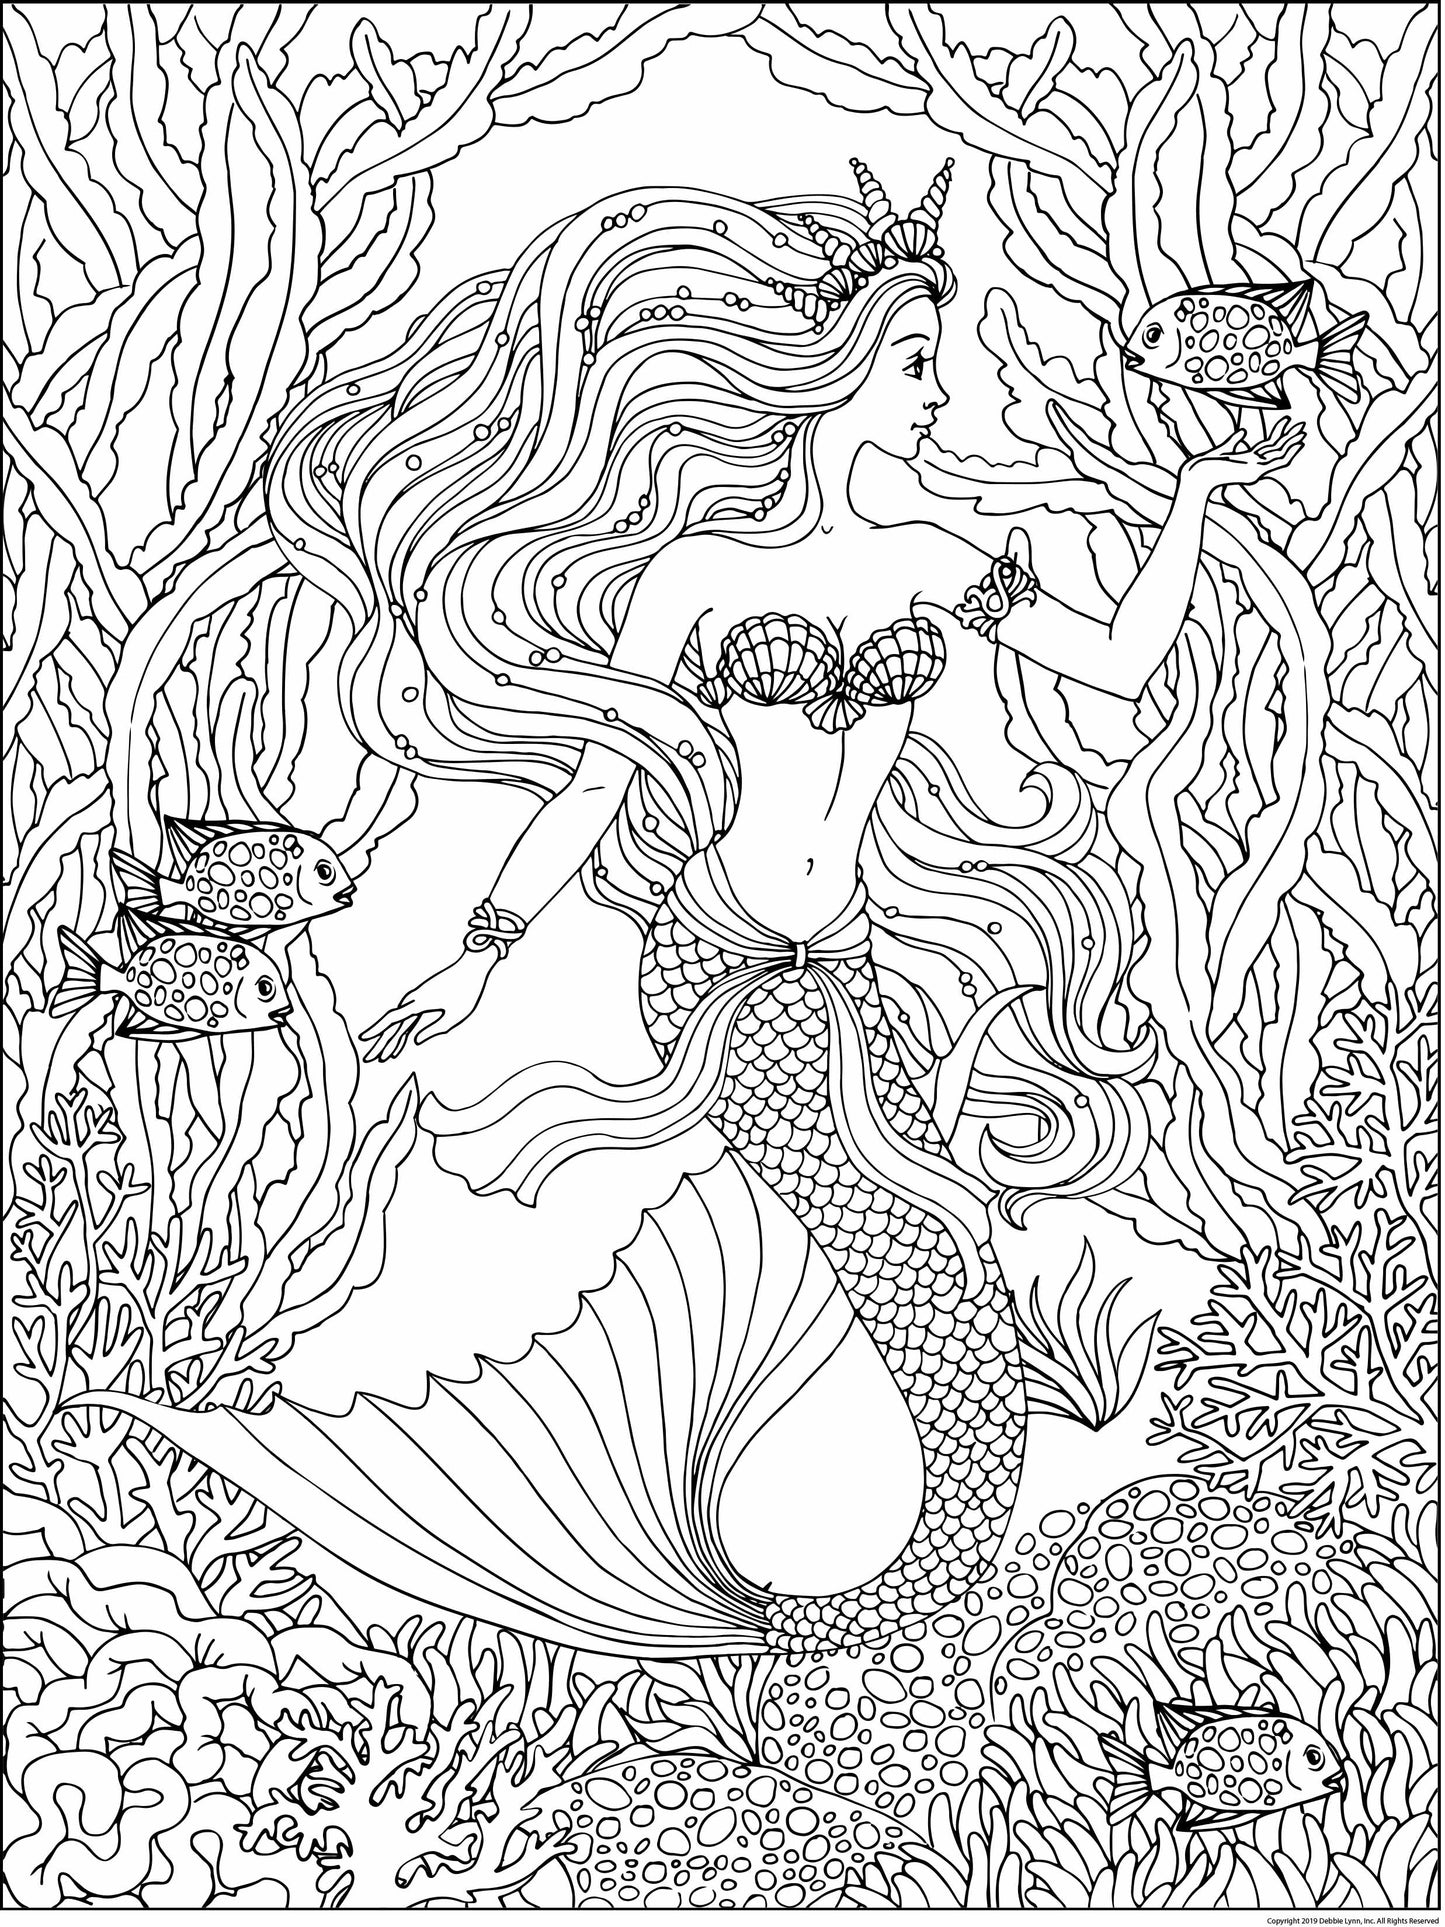 Magical Mermaid Poster Set